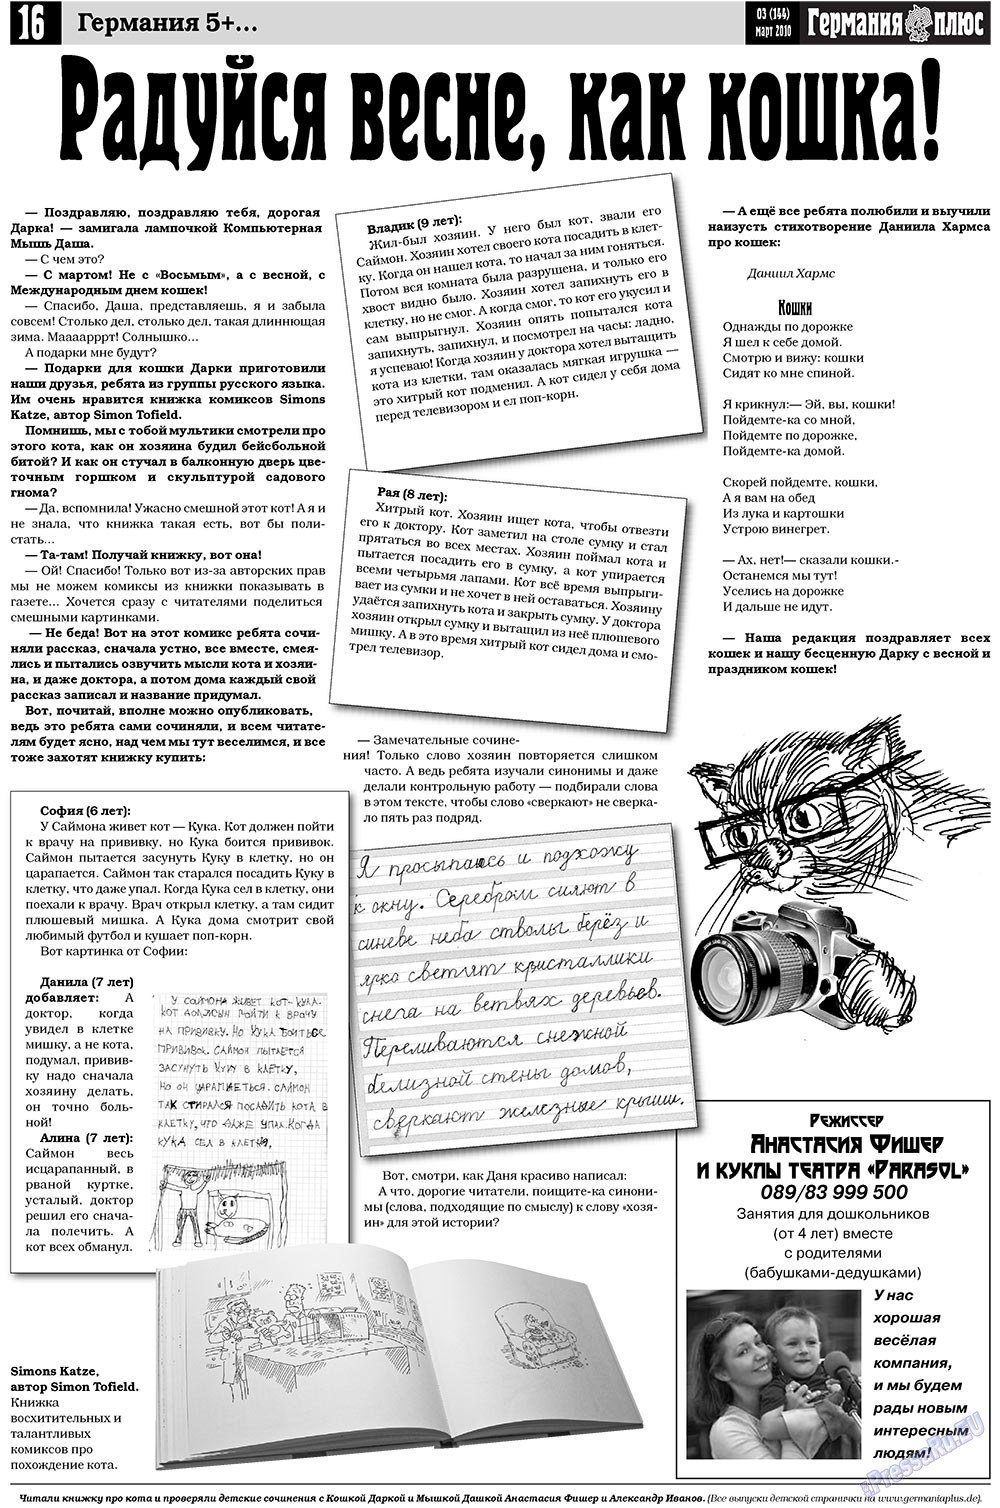 Германия плюс, газета. 2010 №3 стр.16